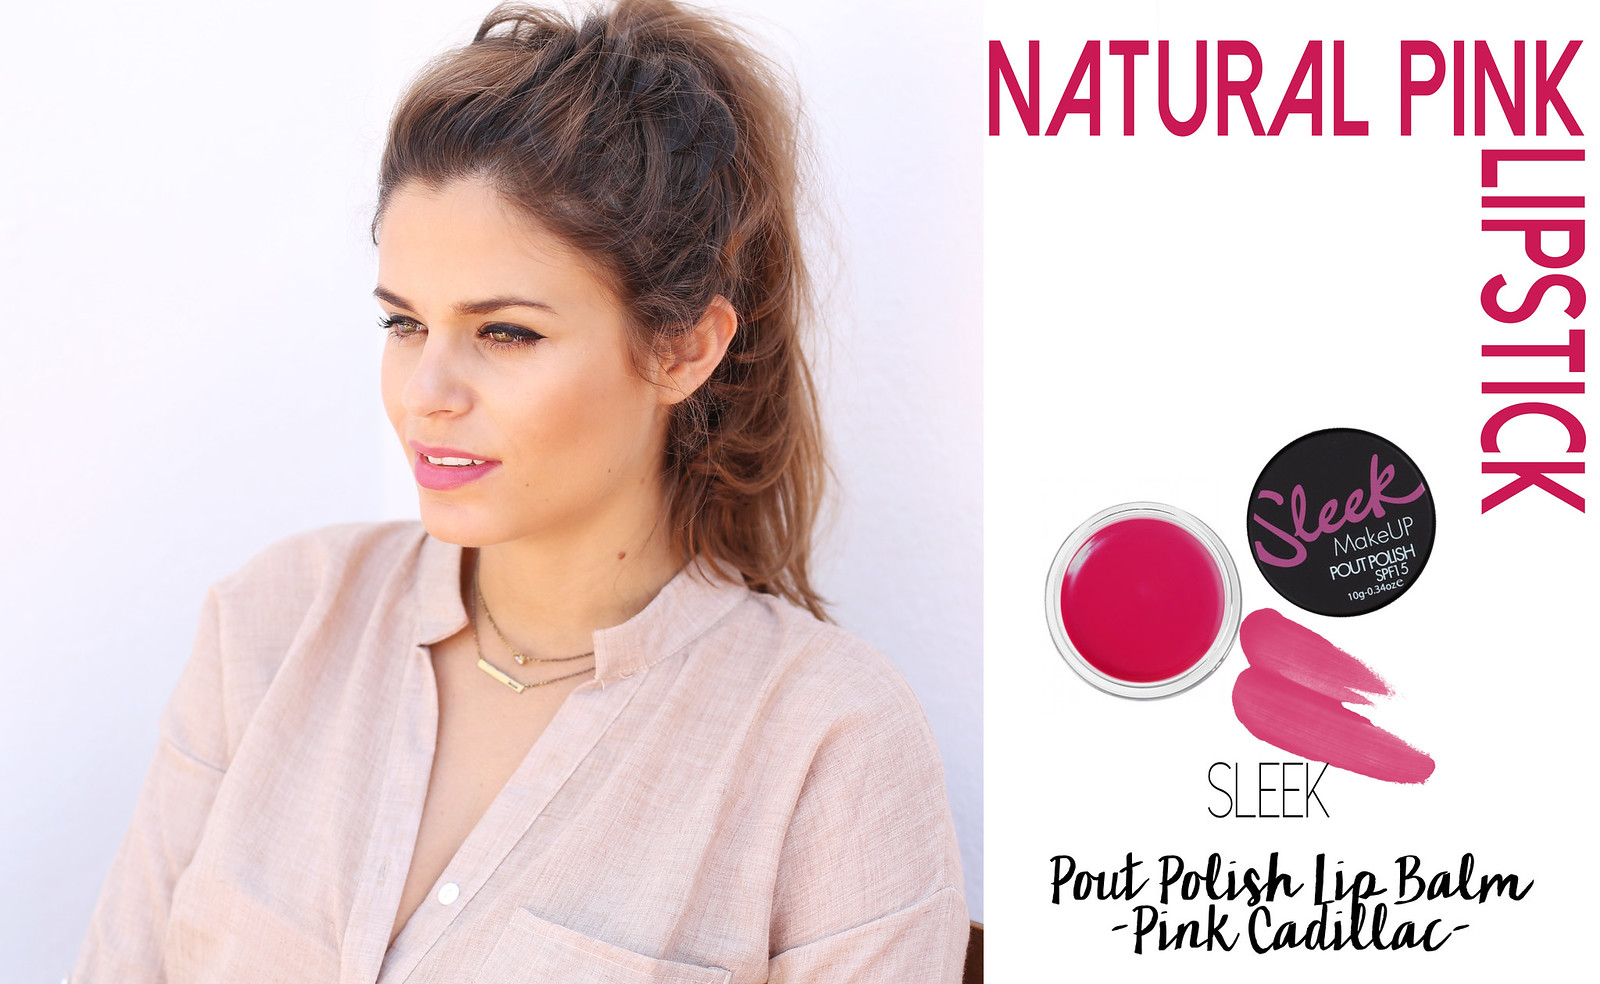 2.natural pink pout polish lip balm - sleek